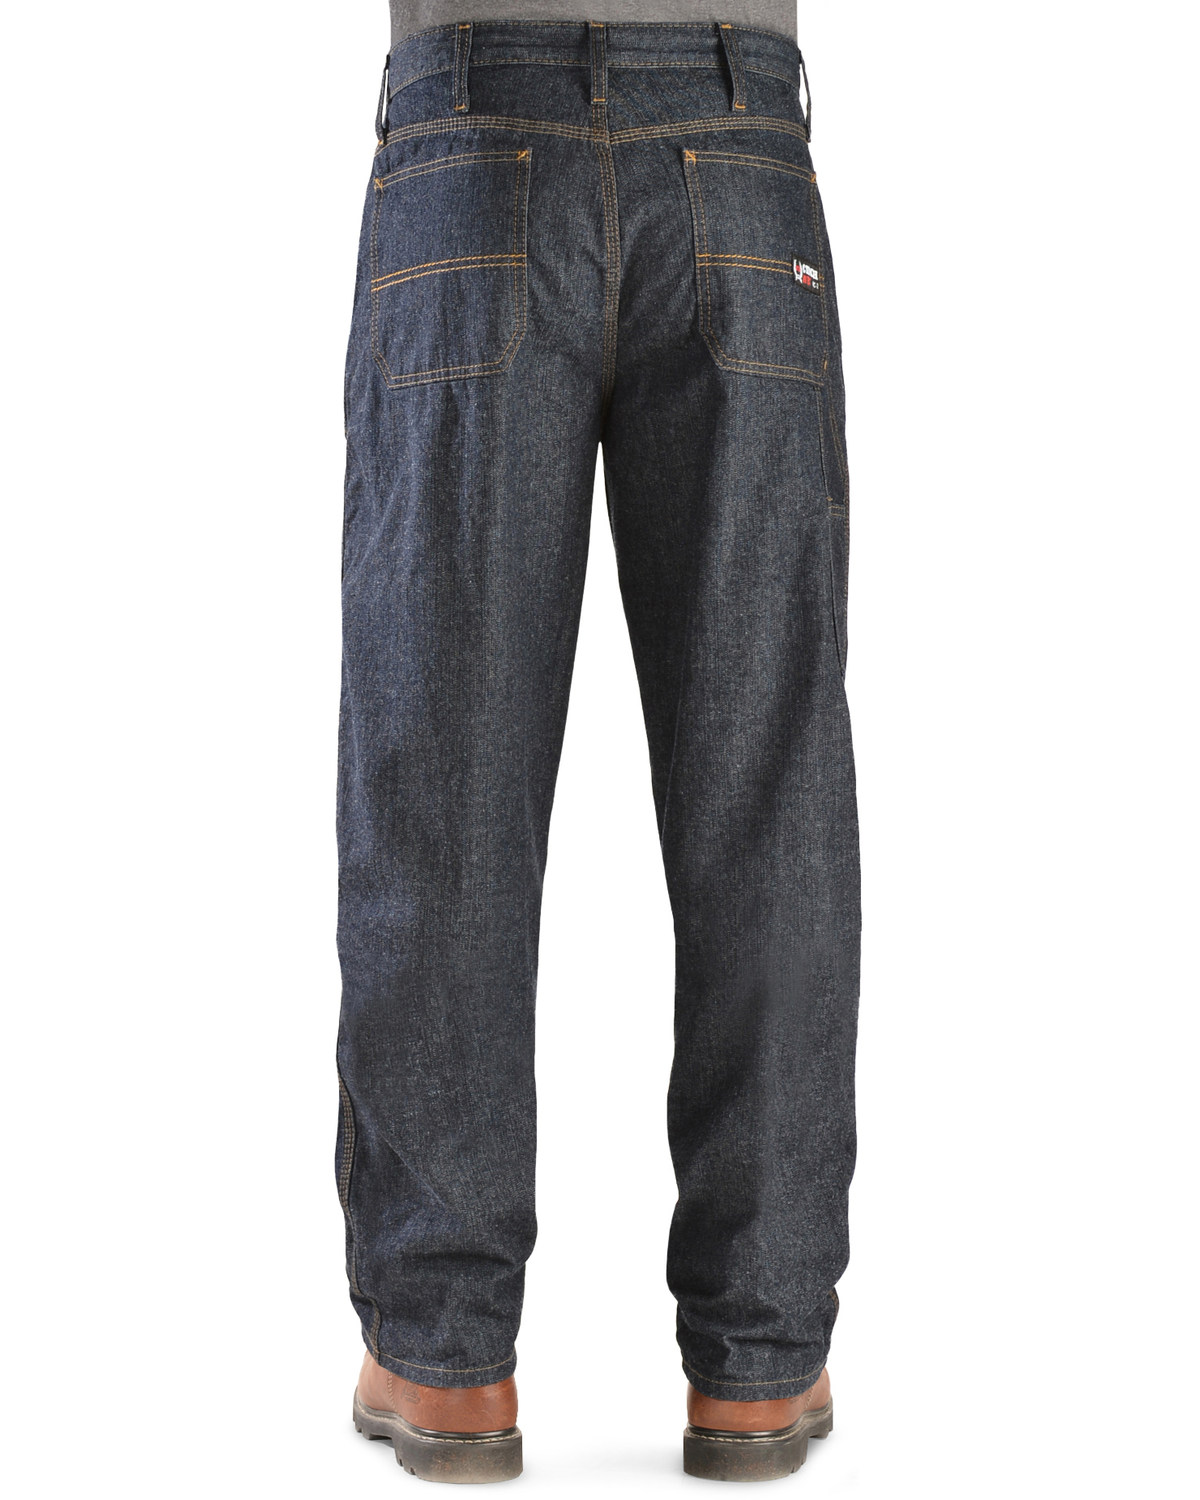 Cinch Men's Blue Label Carpenter WRX Flame Resistant Jeans - 38" Inseam